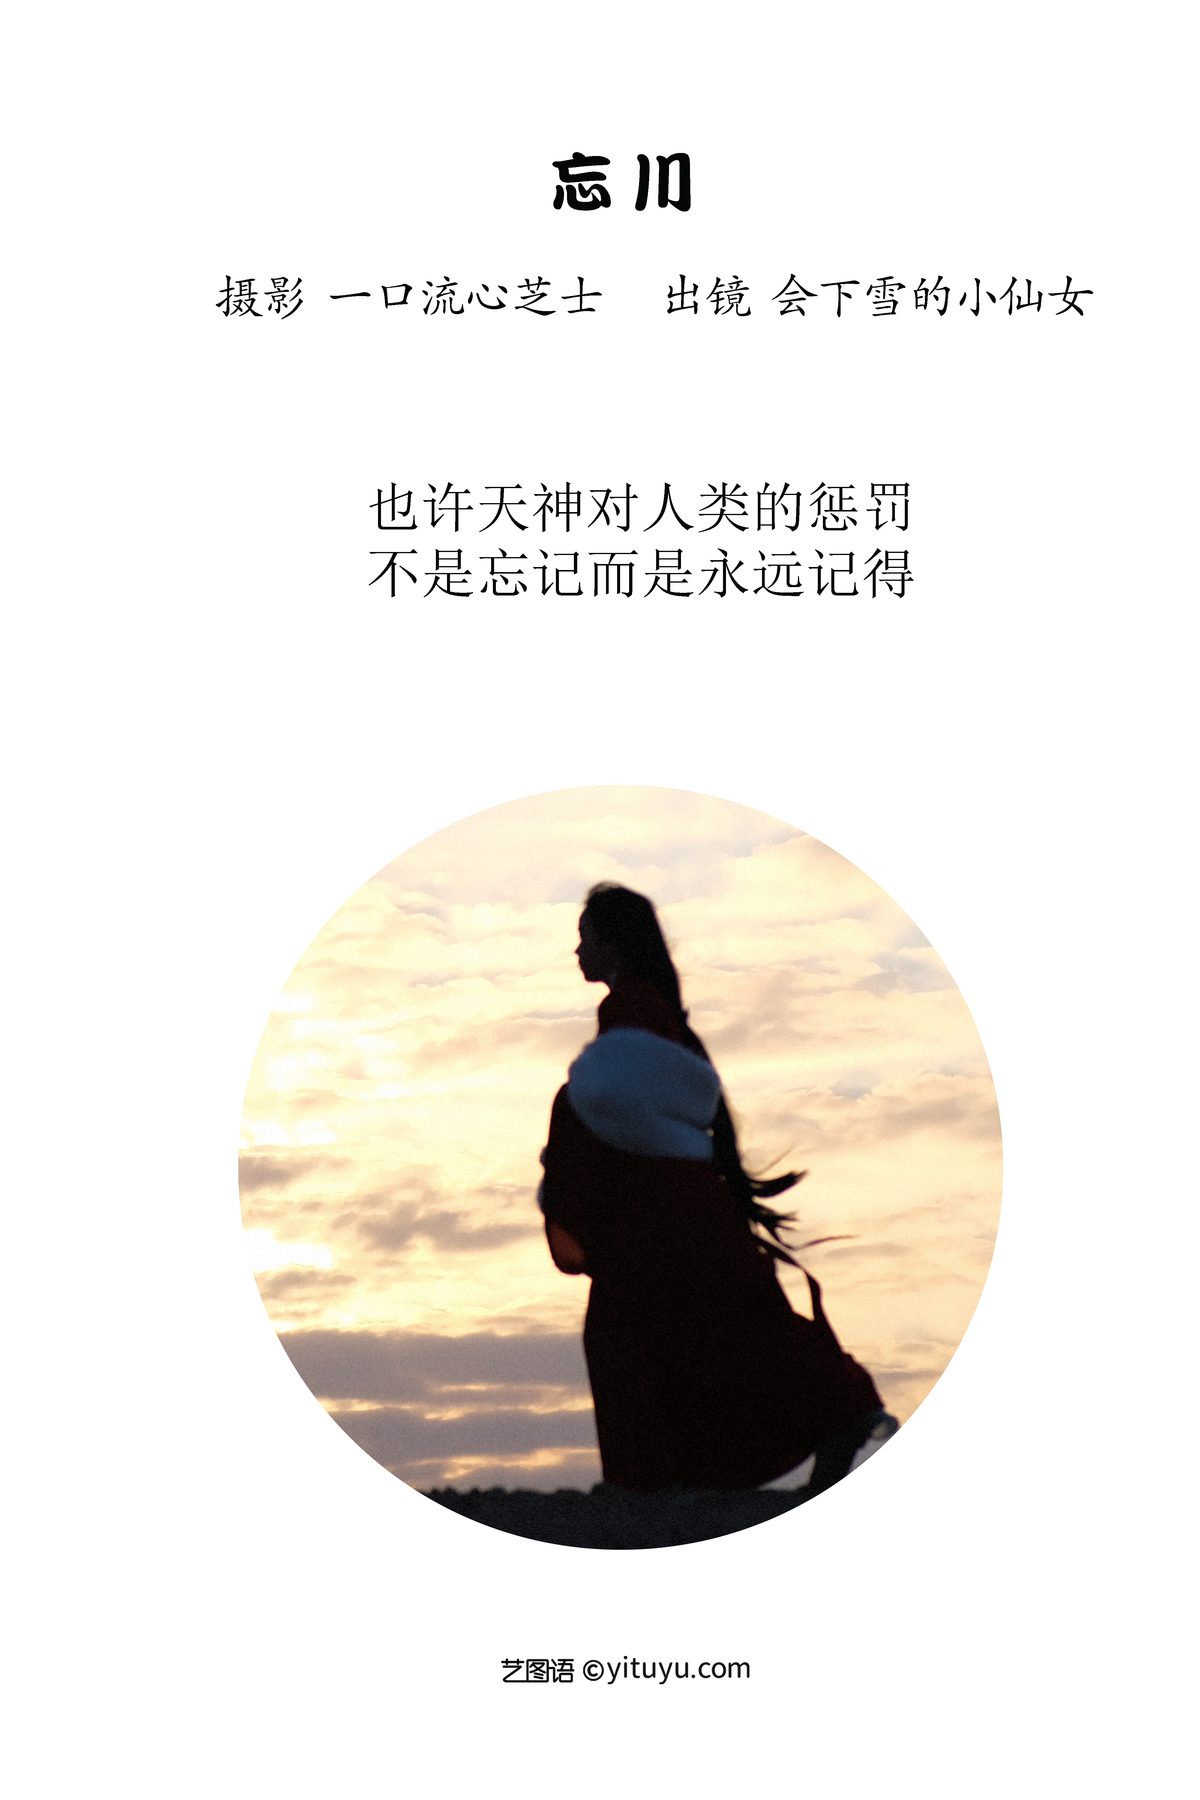 YiTuYu艺图语 Vol 3136 Hui Xia Xue De Xiao Xian Nu 0001 5412765734.jpg